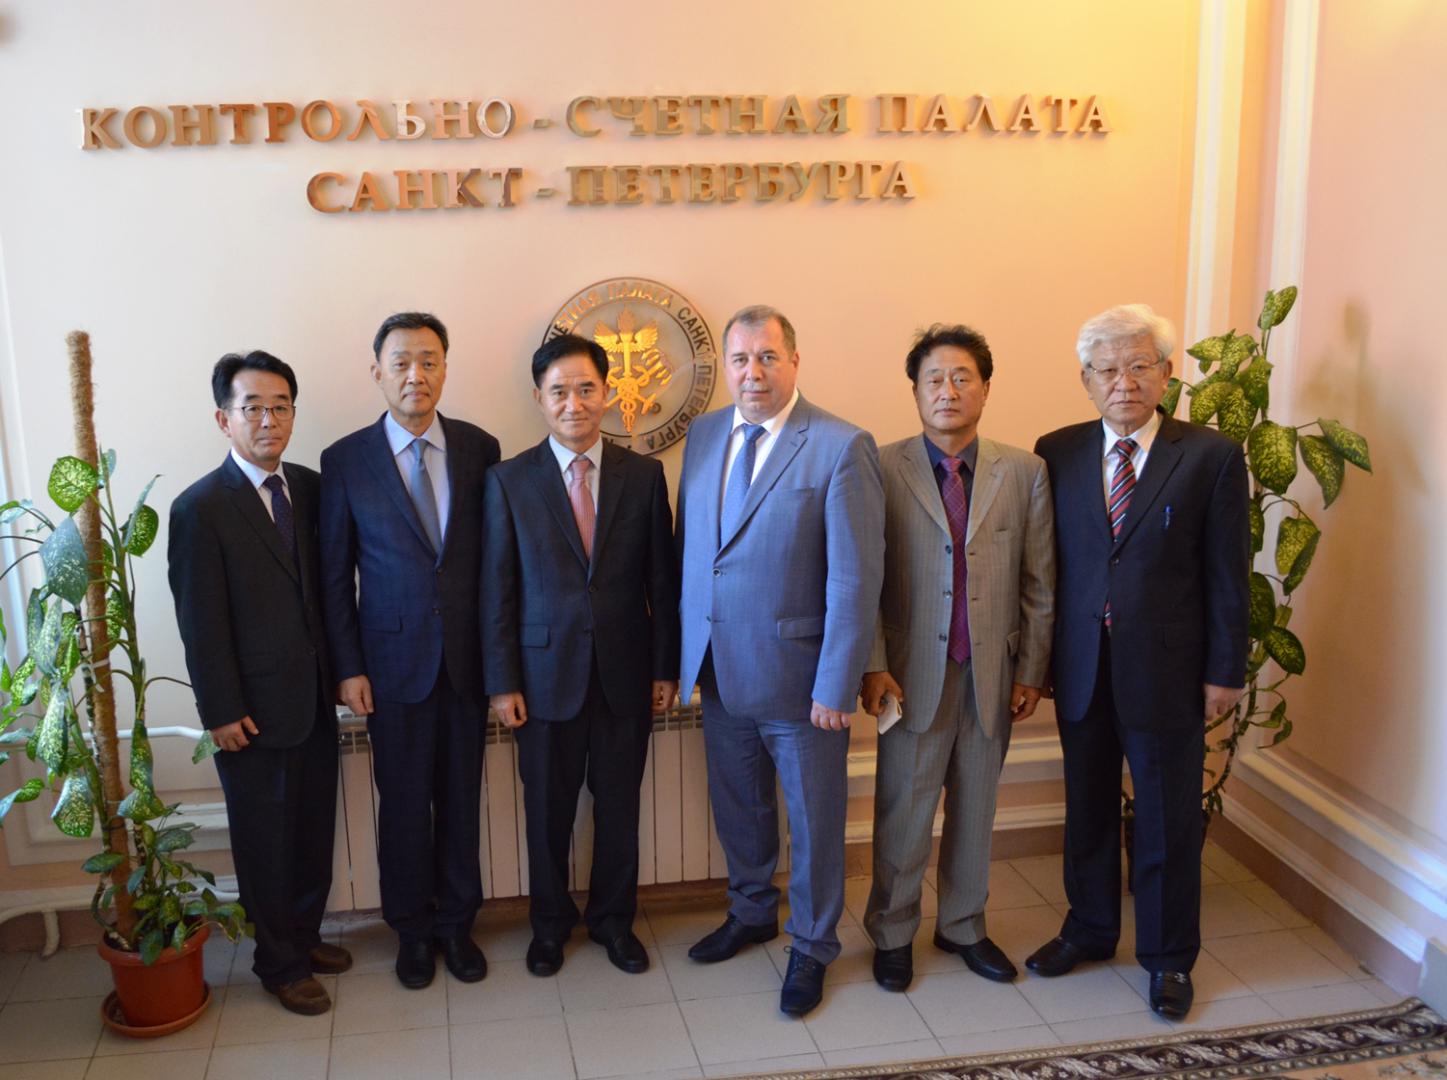 Контрольно-счетную палату Санкт-Петербурга посетила делегация корейских аудиторов провинции Чеджу